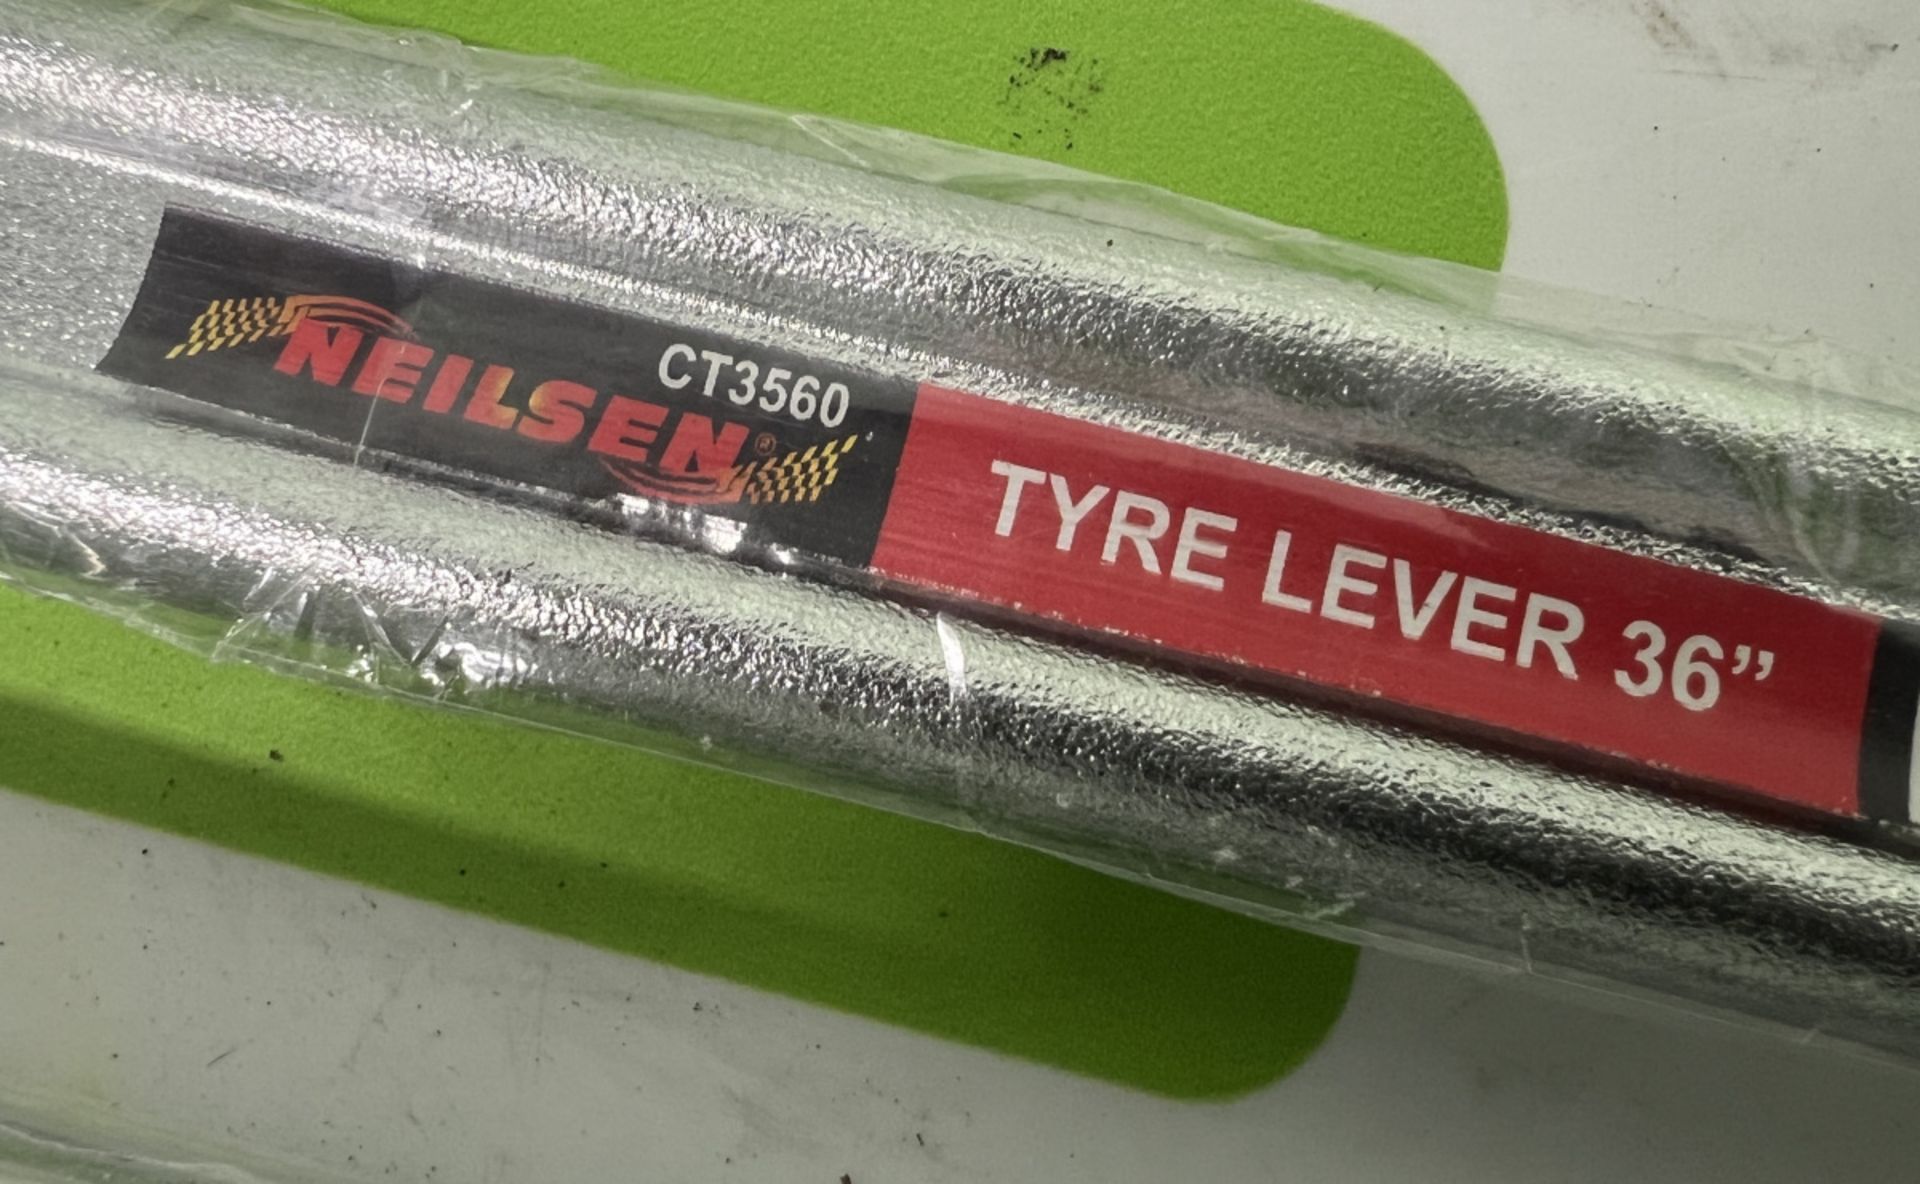 4x Neilsen 36 inch tyre levers - CT3560 - Image 4 of 4